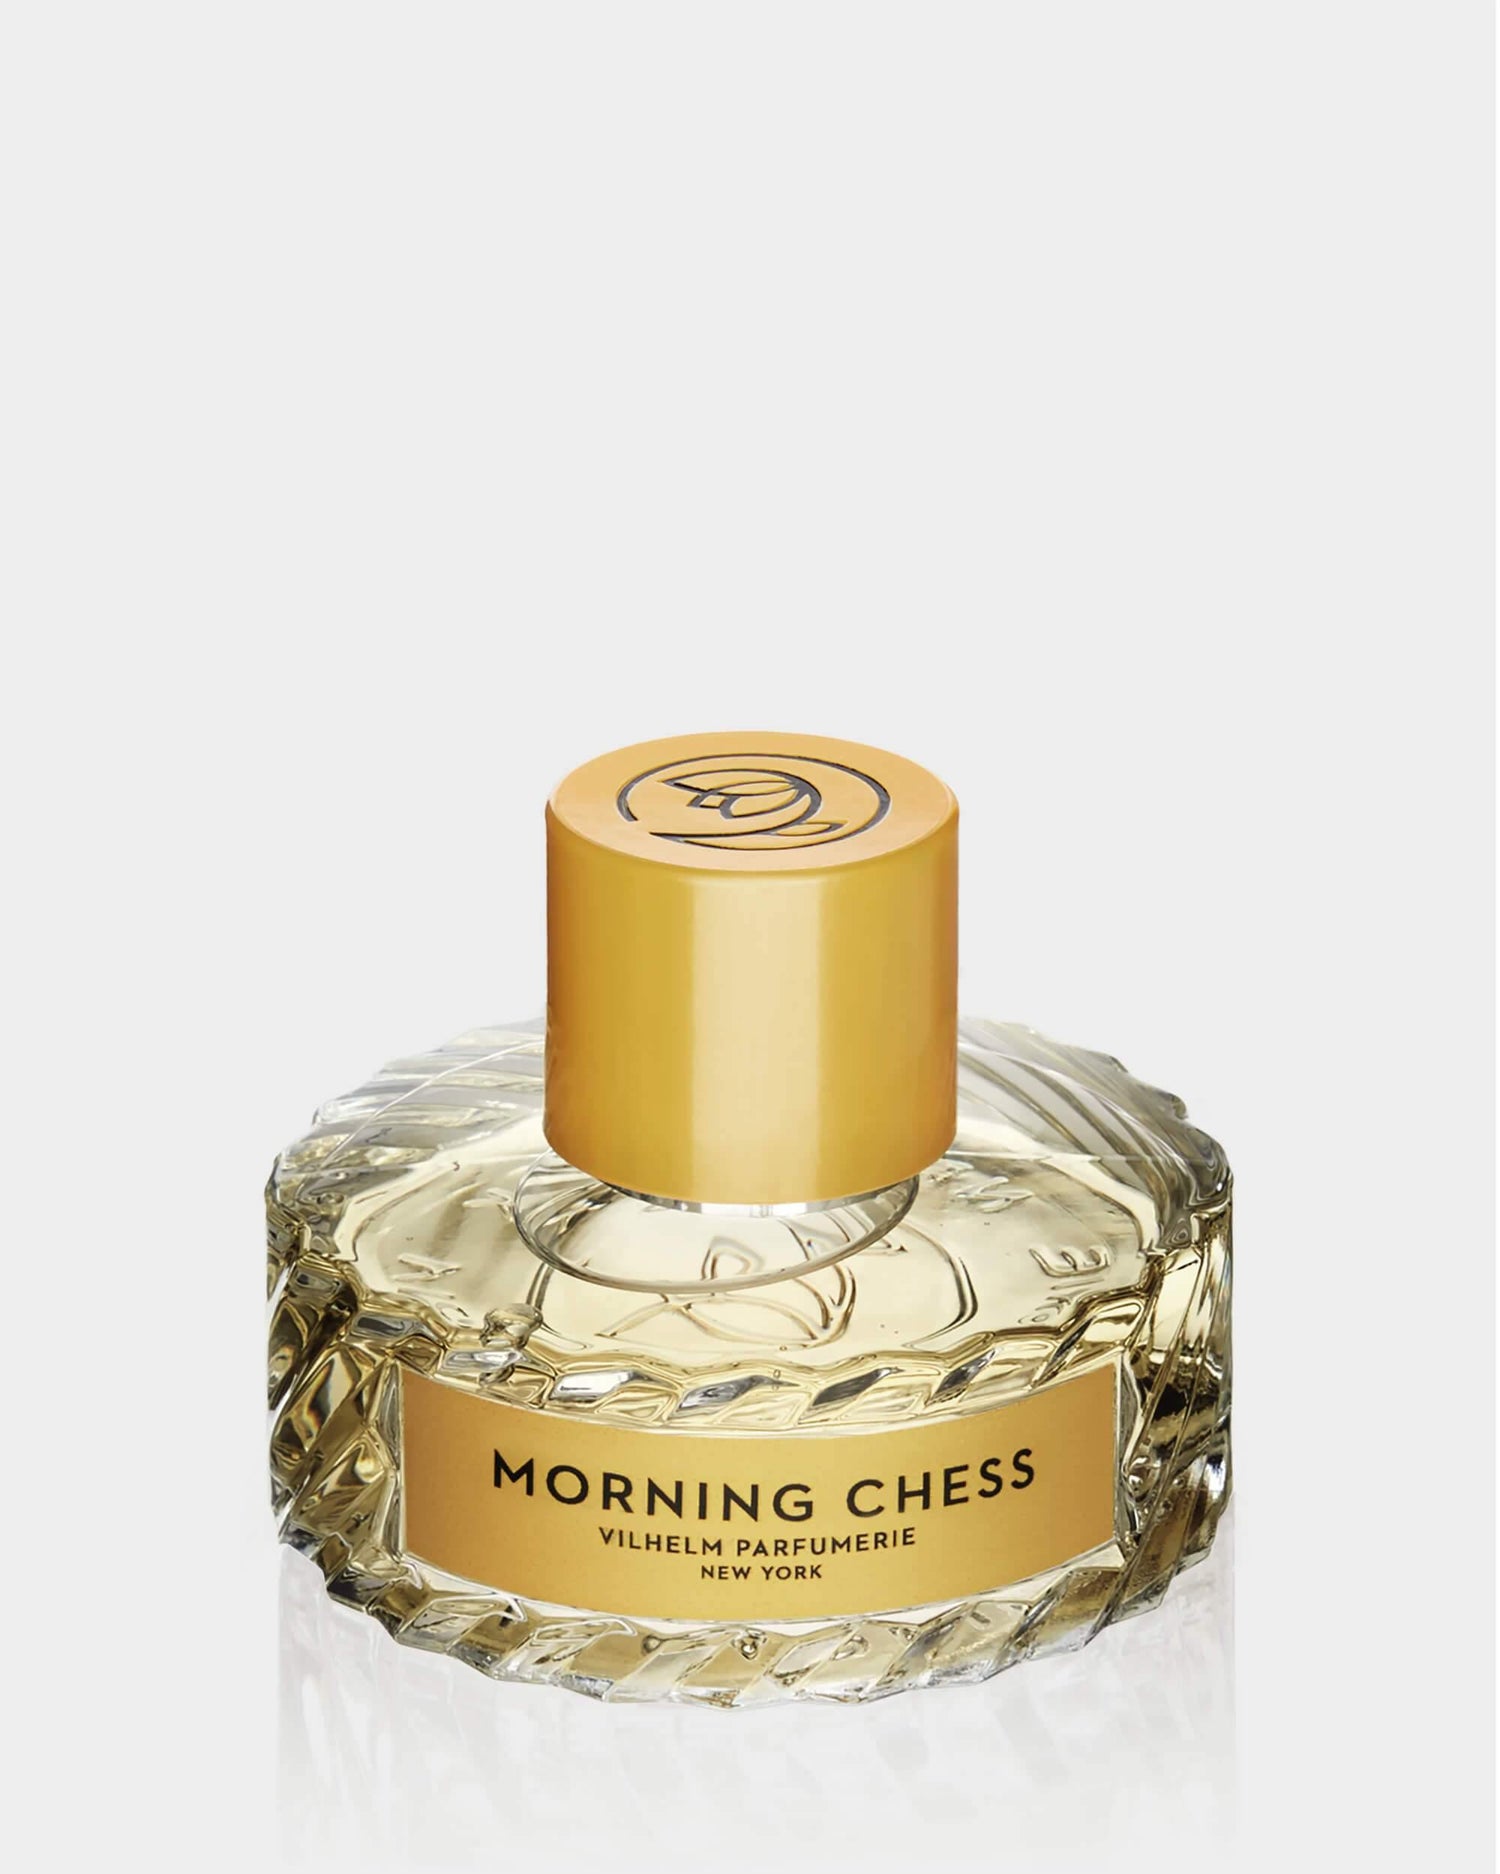 MORNING CHESS - Vilhelm Parfumerie